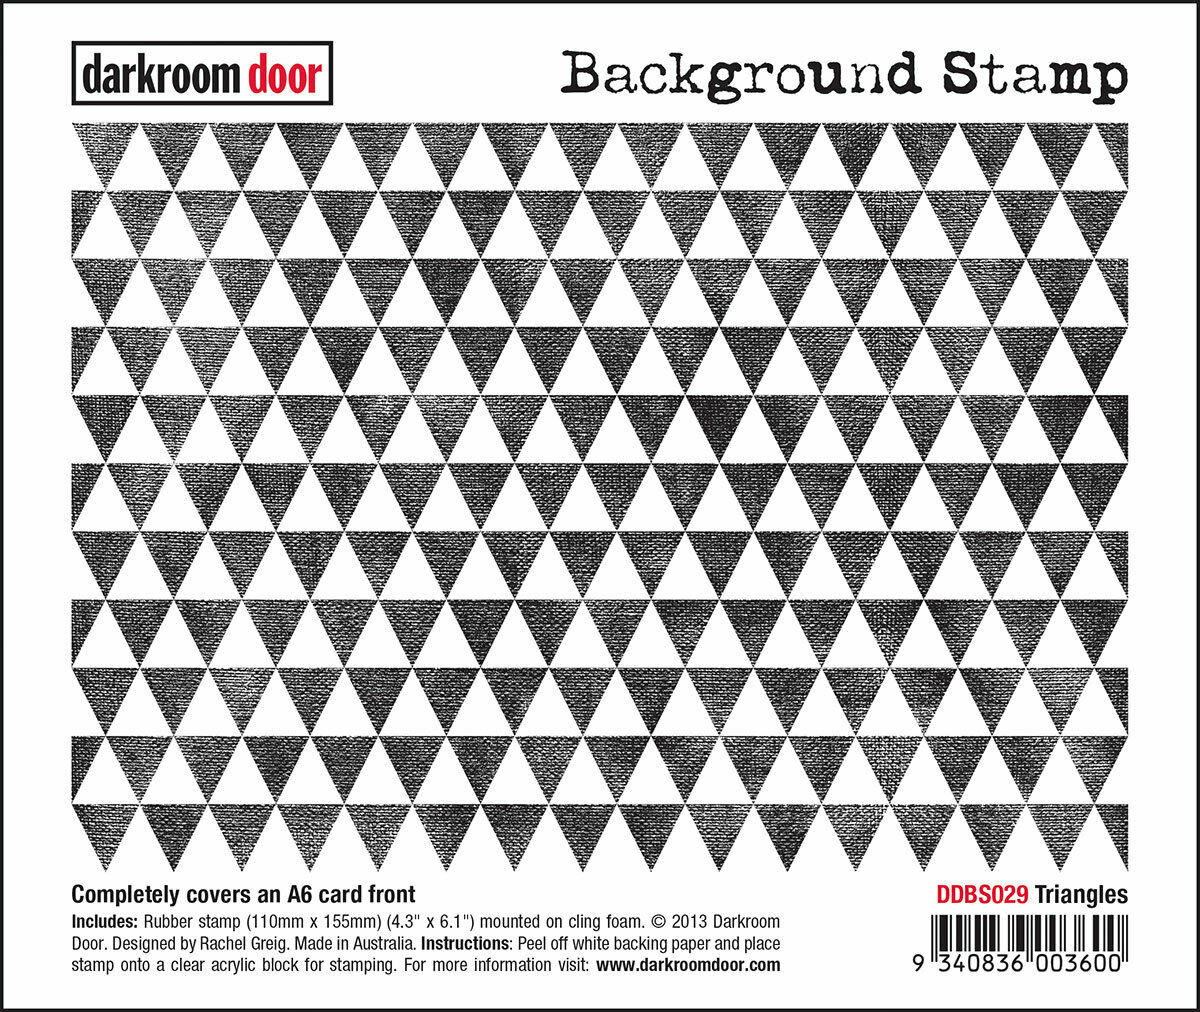 Darkroom Door Background Rubber Stamp Triangles 110 x 155mm